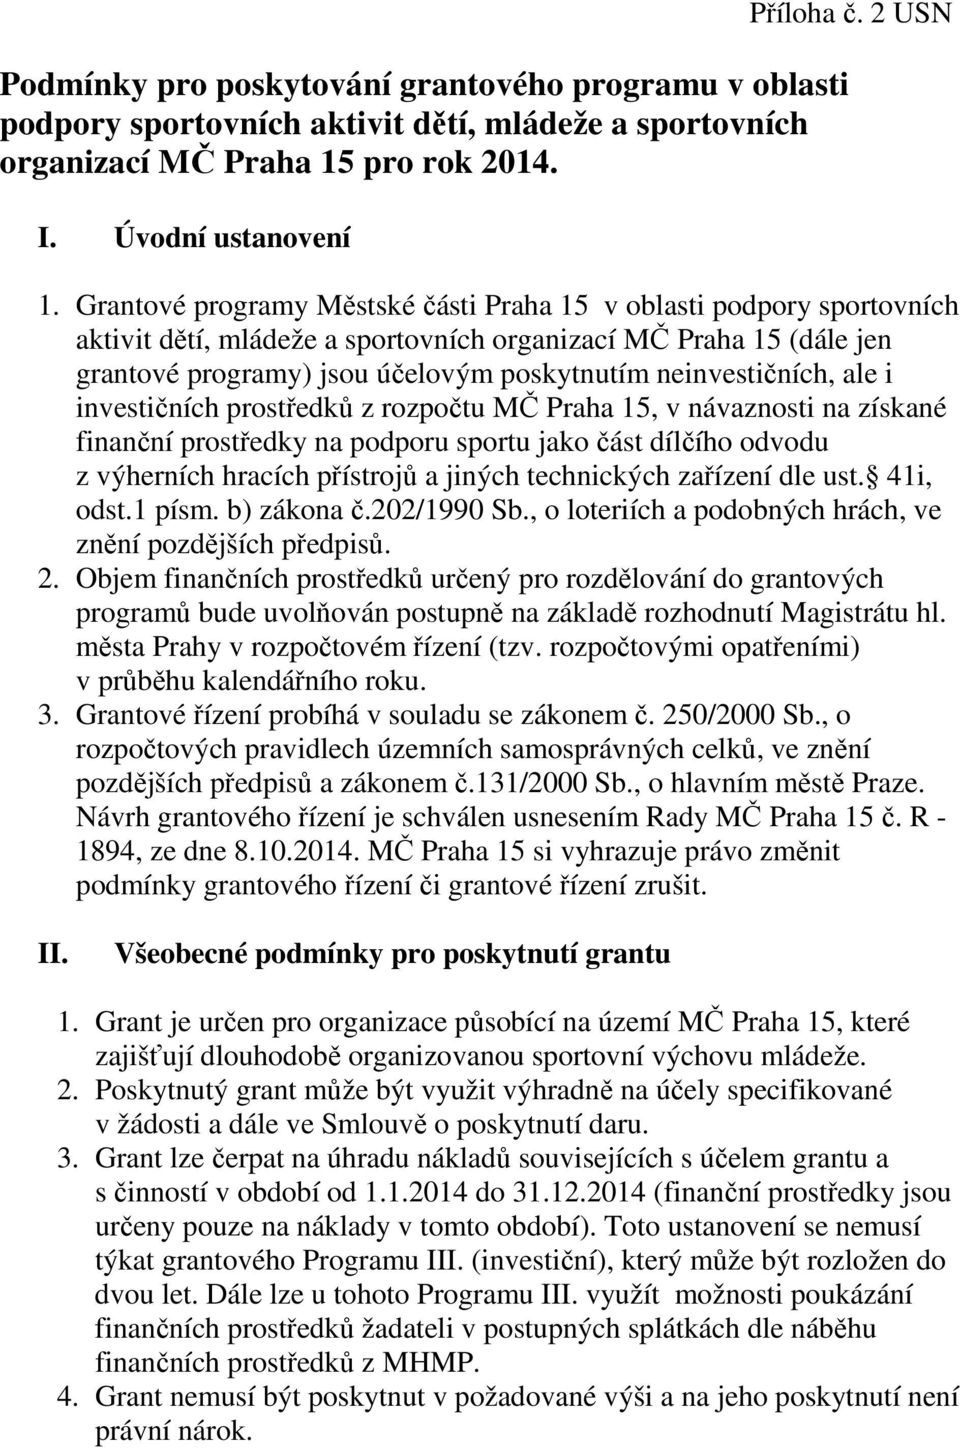 neinvestičních, ale i investičních prostředků z rozpočtu MČ Praha 15, v návaznosti na získané finanční prostředky na podporu sportu jako část dílčího odvodu z výherních hracích přístrojů a jiných